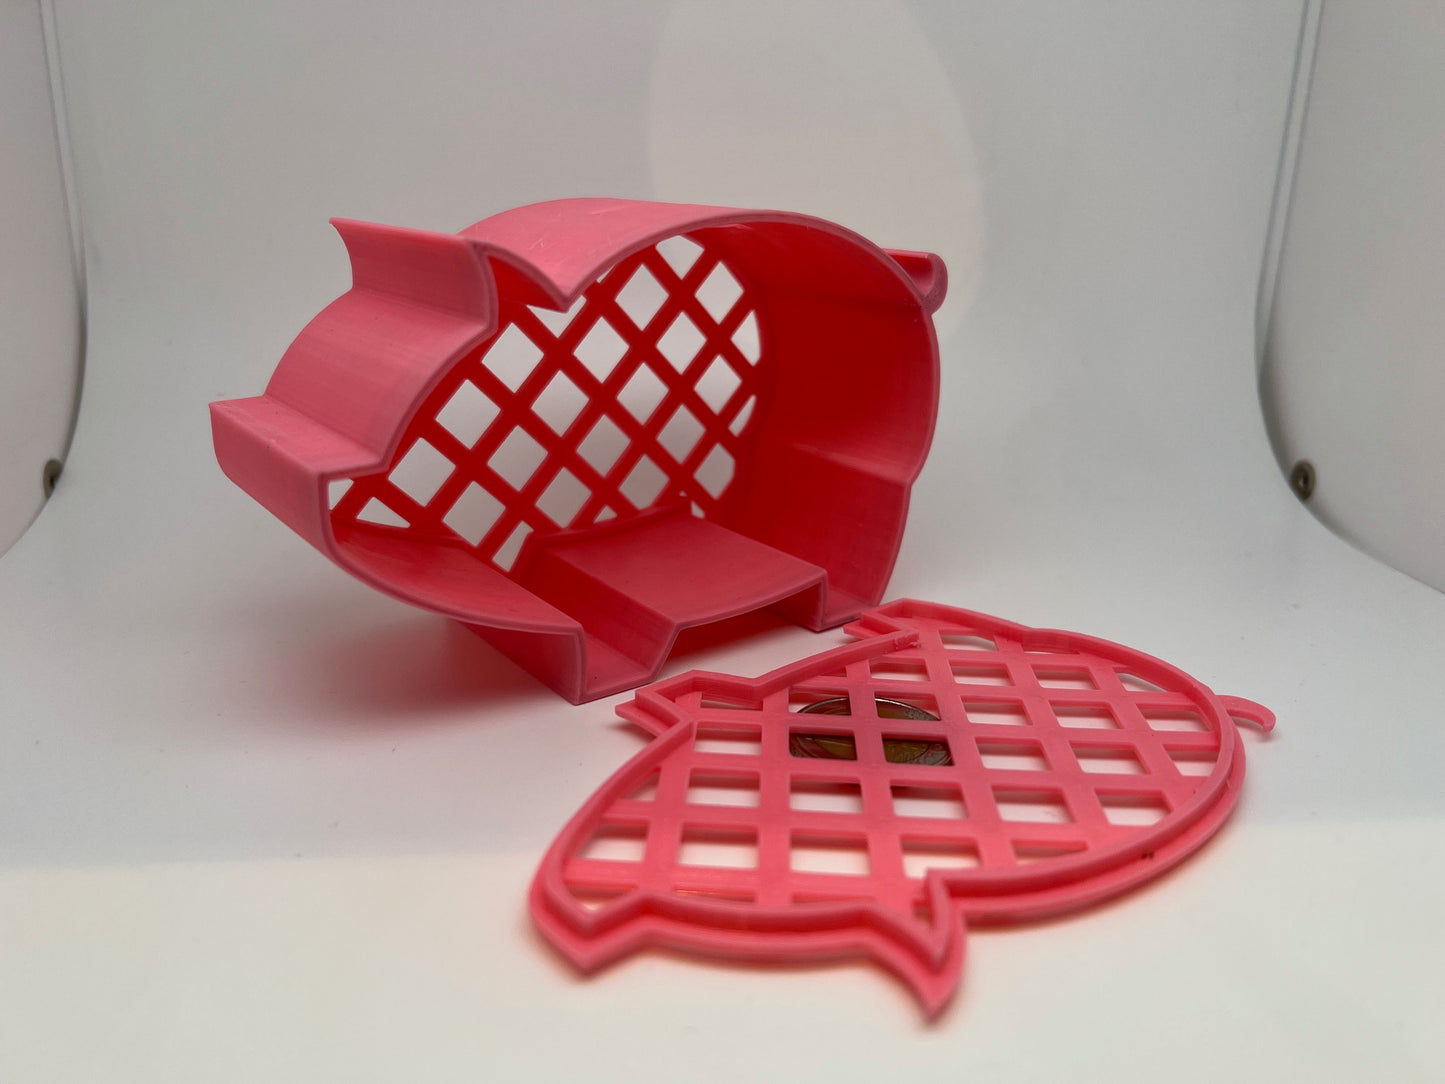 Salvadanaio Maialino 3D apribile - Vari colori. – stampatello